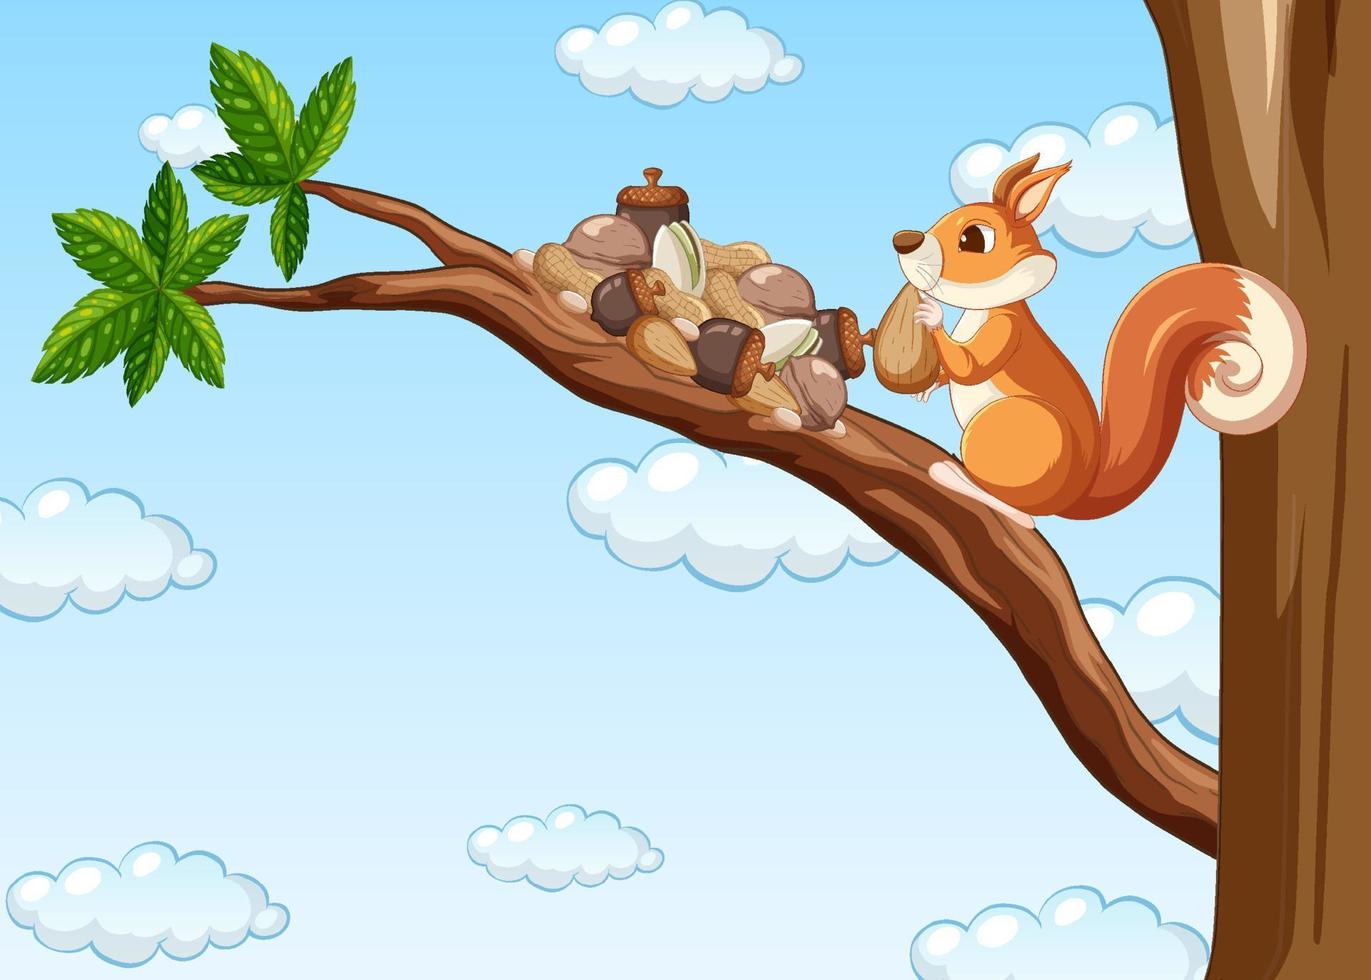 écureuil mangeant des noix sur l'arbre vecteur